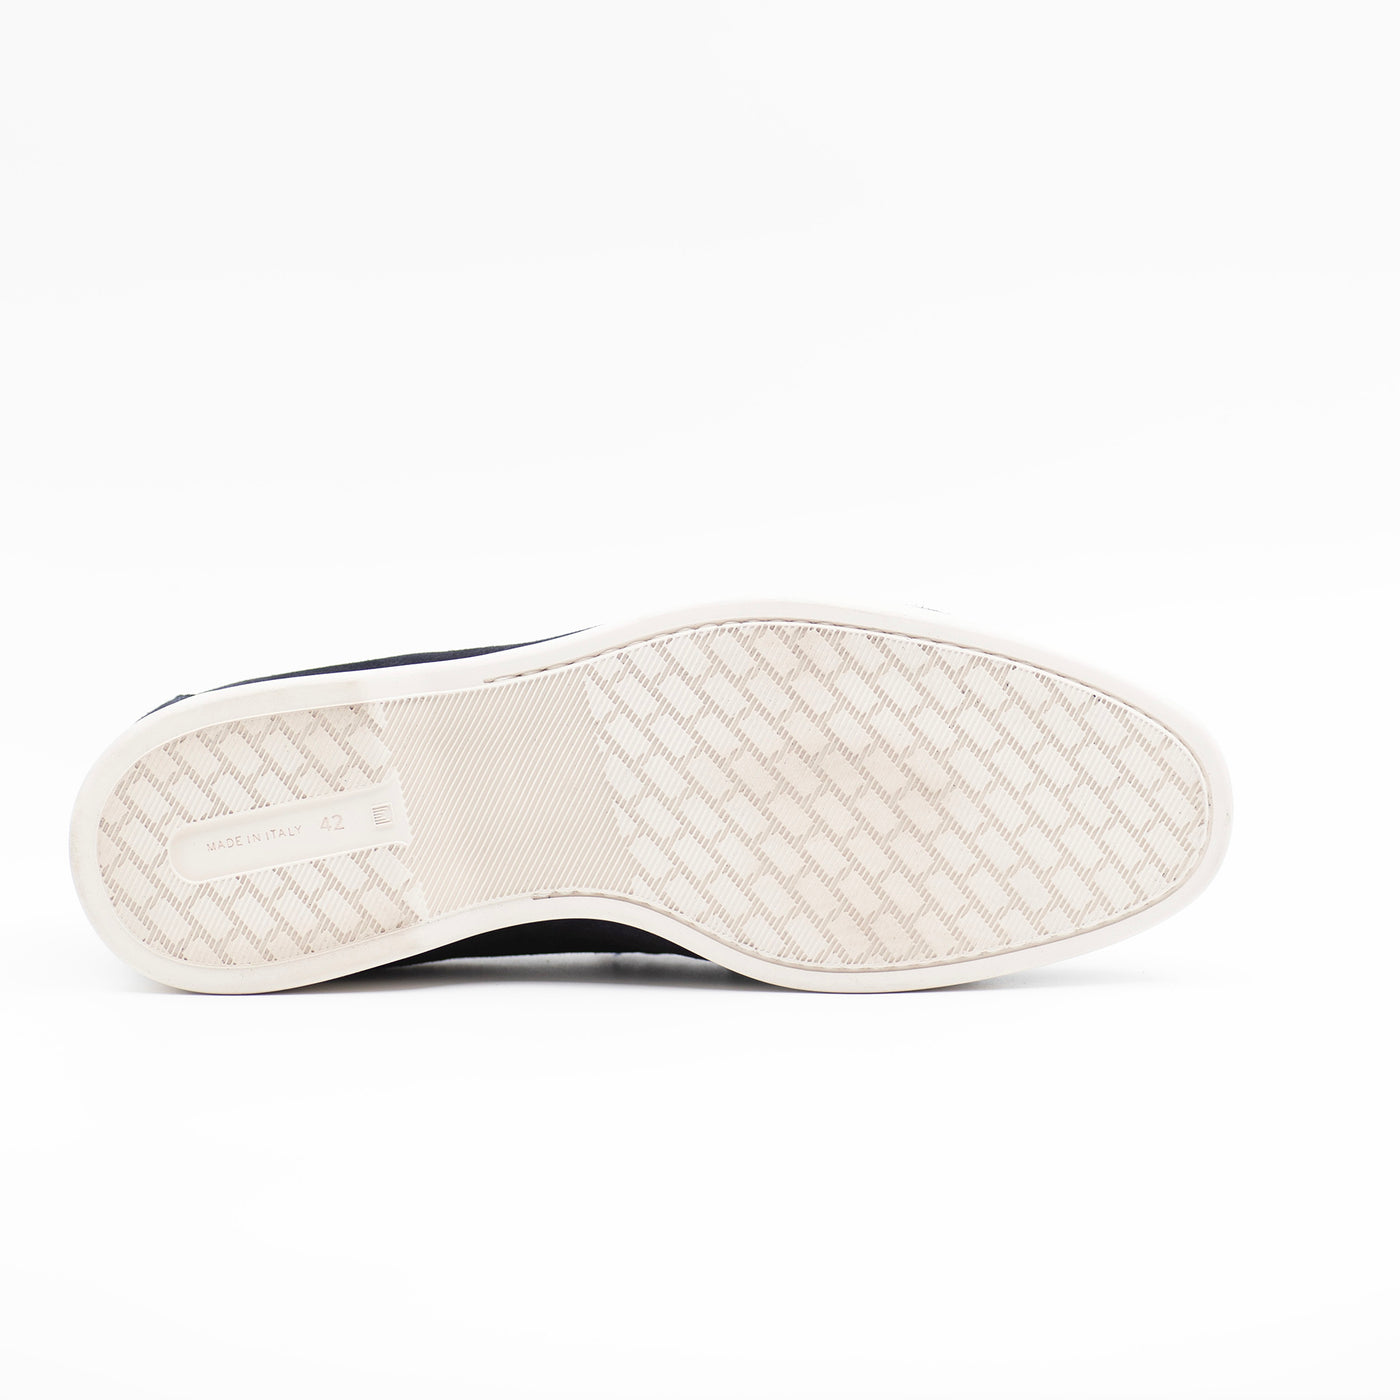 White rubber sole